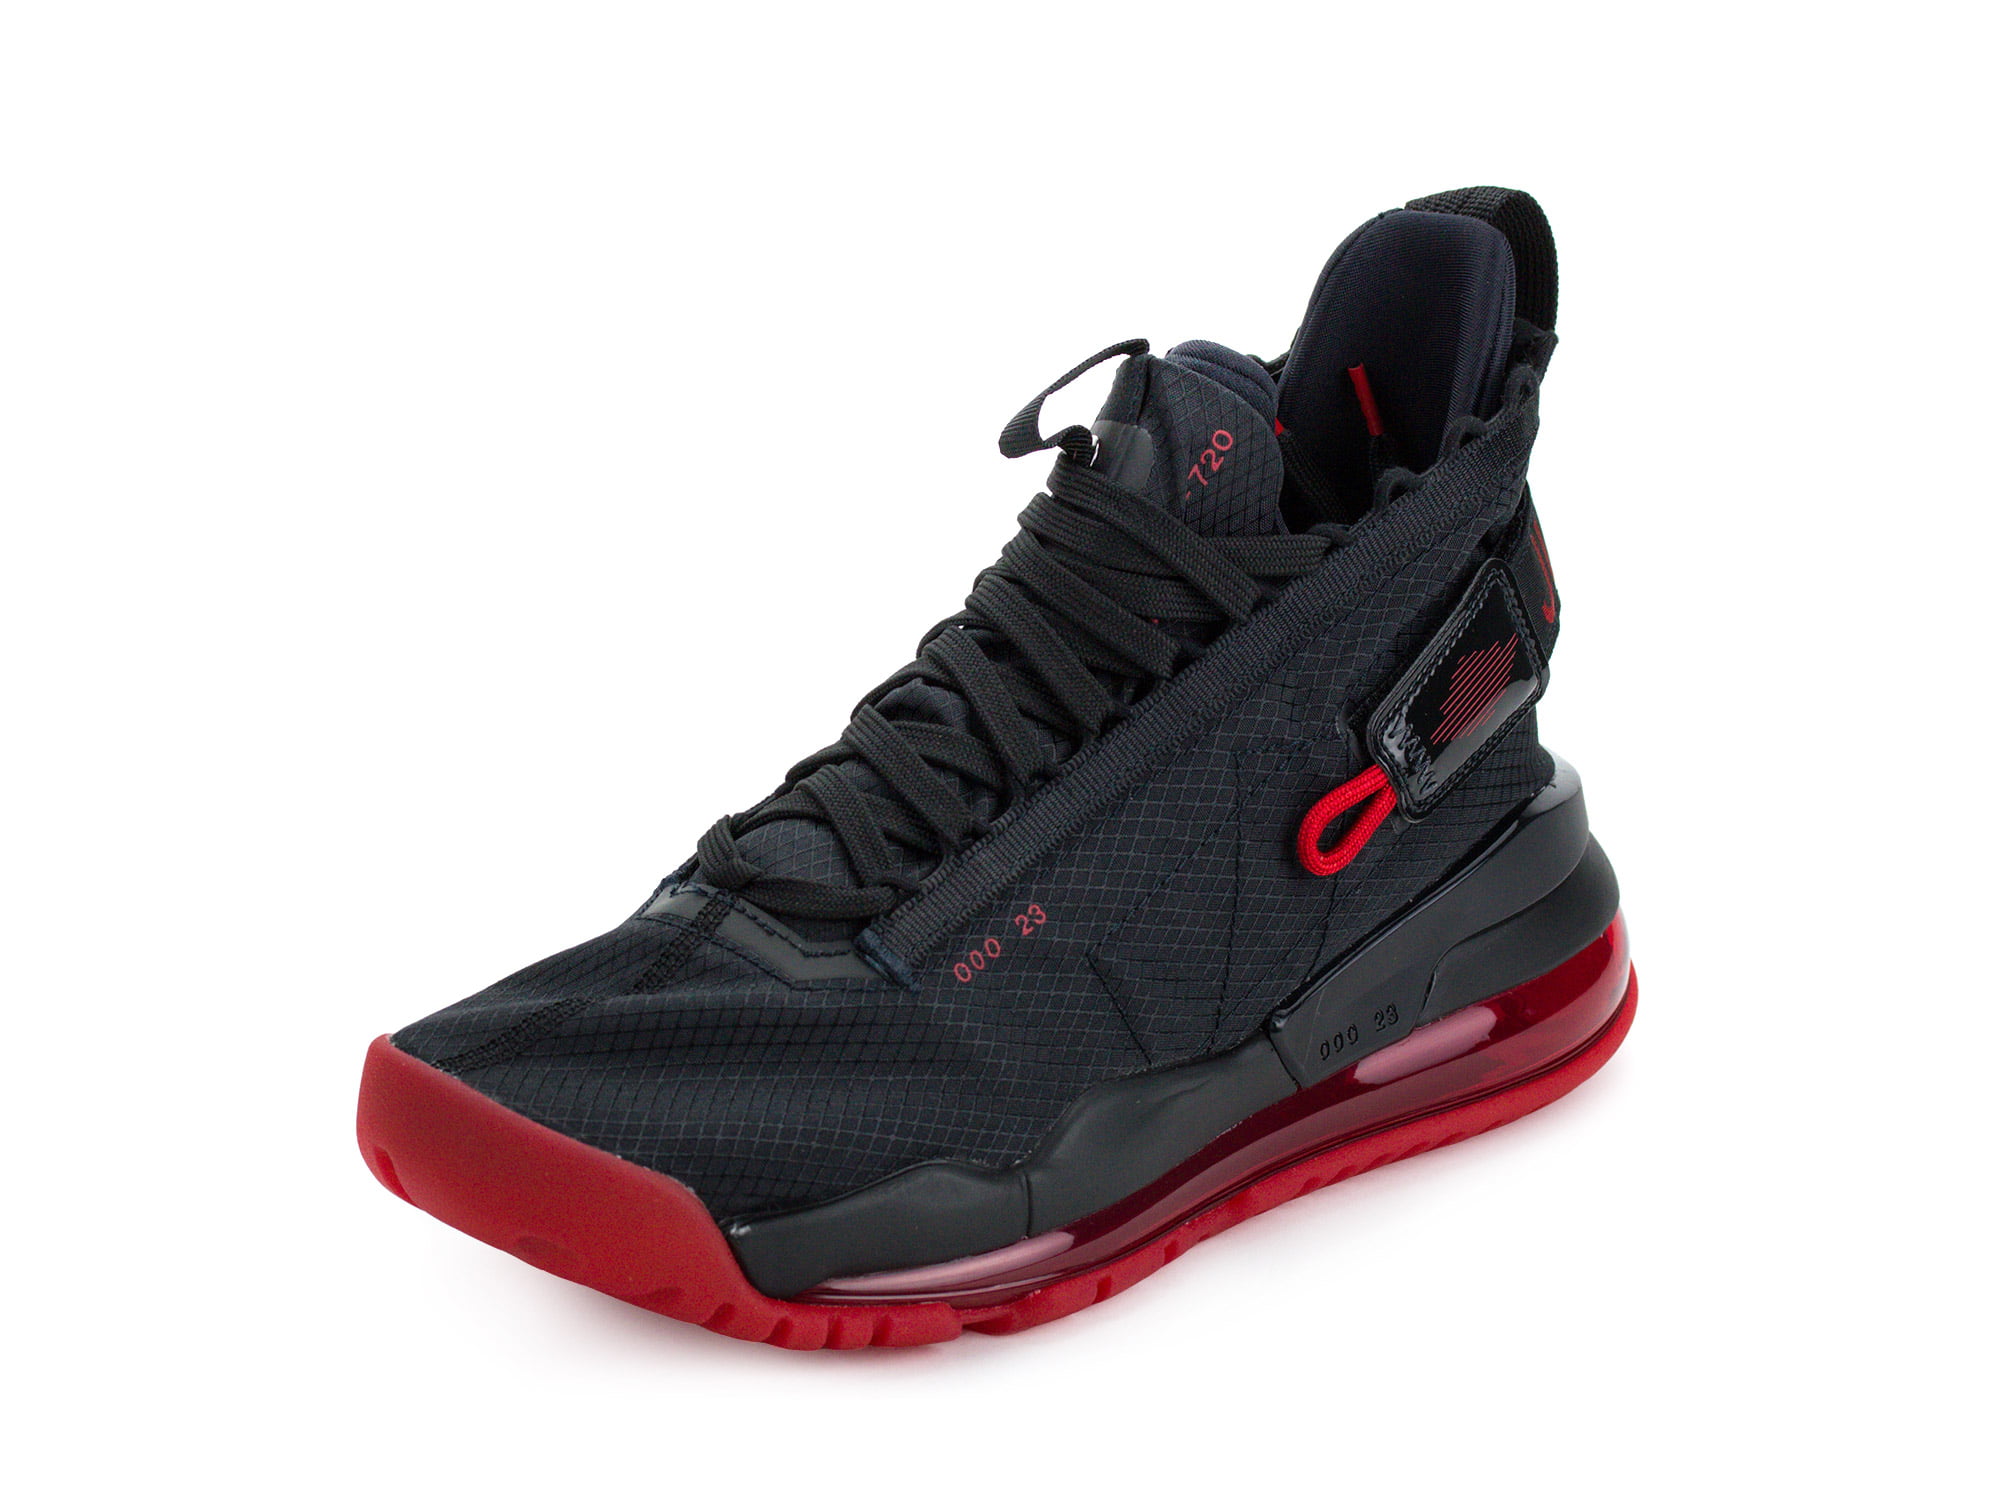 industria desagradable pecador Nike Mens Jordan Proto Max 720 Black/University Red BQ6623-006 - Walmart.com